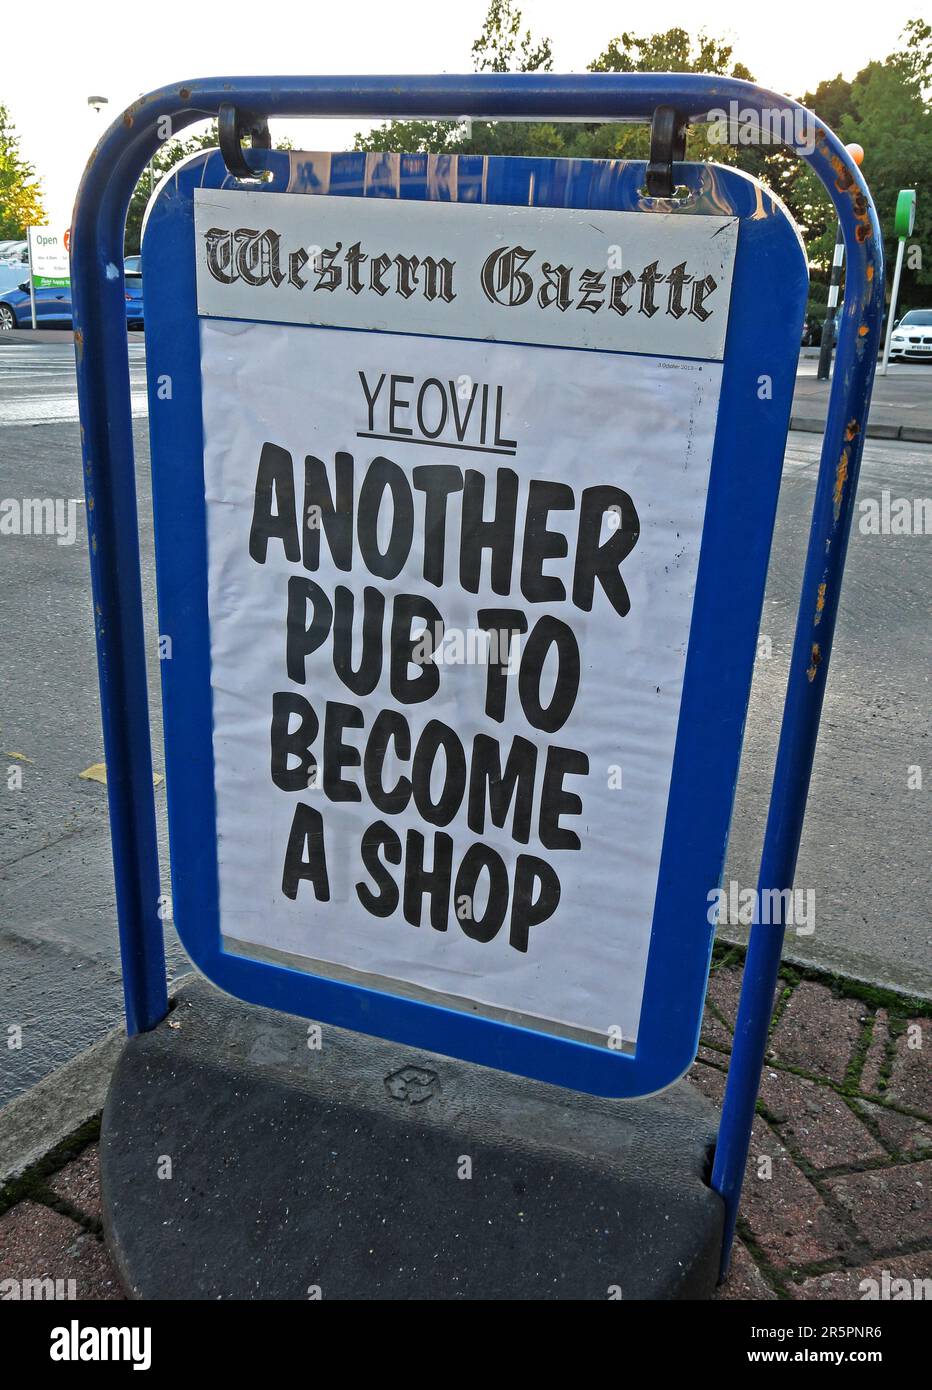 Ancora un altro pub a diventare un negozio, titolo dal Yeovil Western Gazette, Somerset, Inghilterra sud-occidentale, Regno Unito Foto Stock